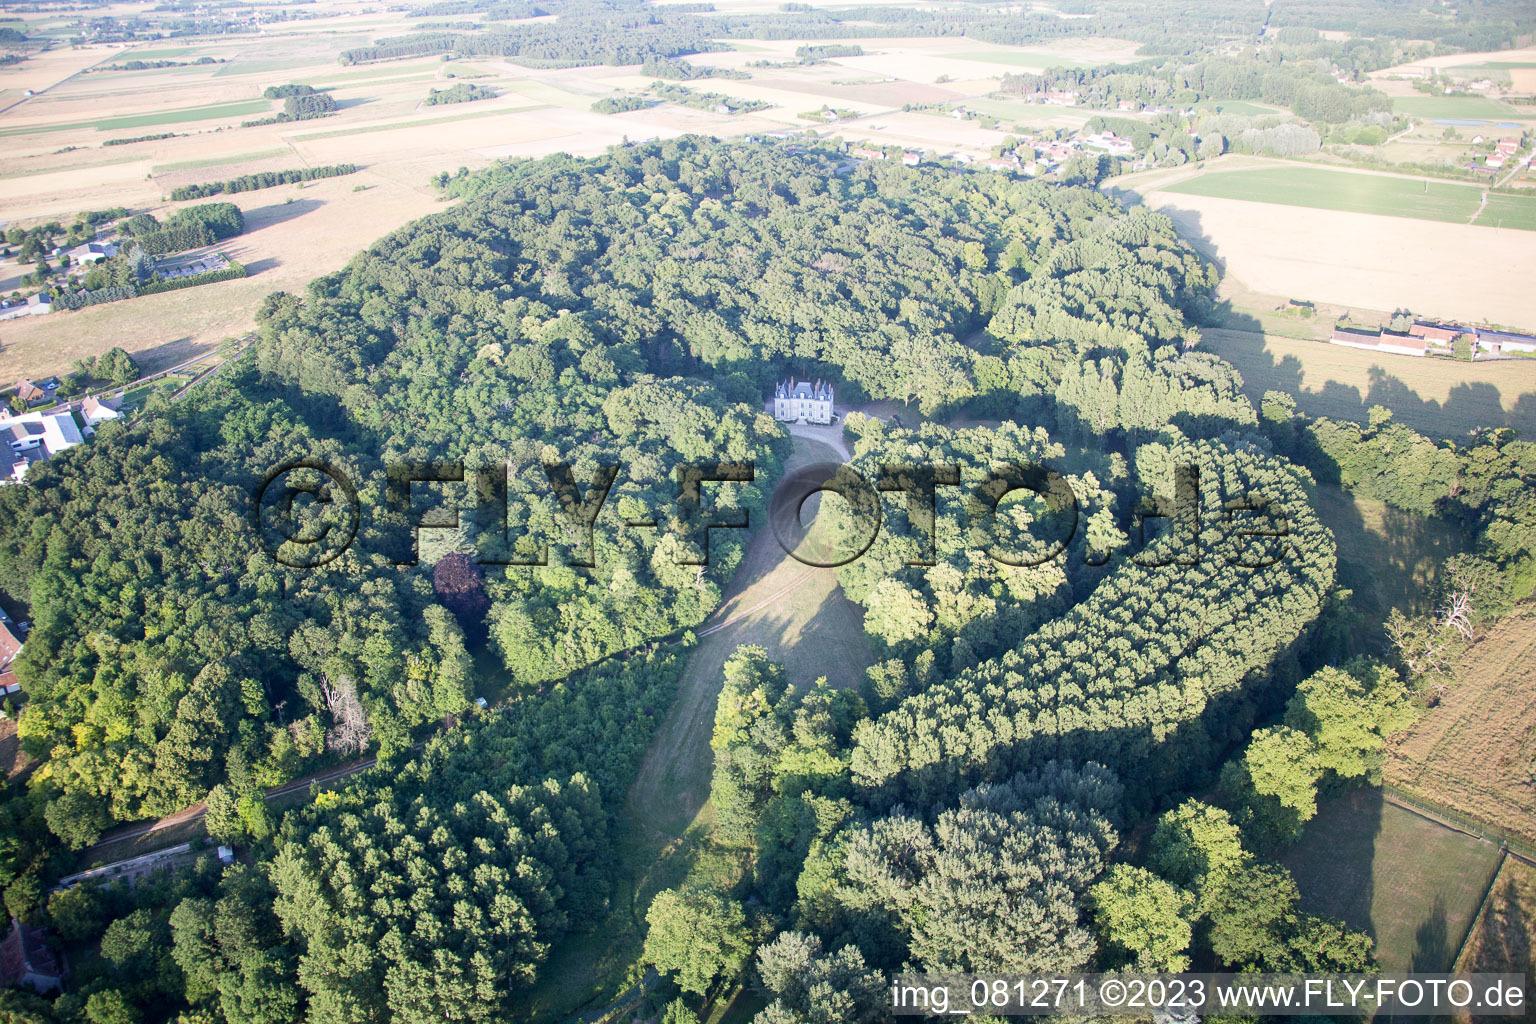 Fougères-sur-Bièvre dans le département Loir et Cher, France vue d'en haut